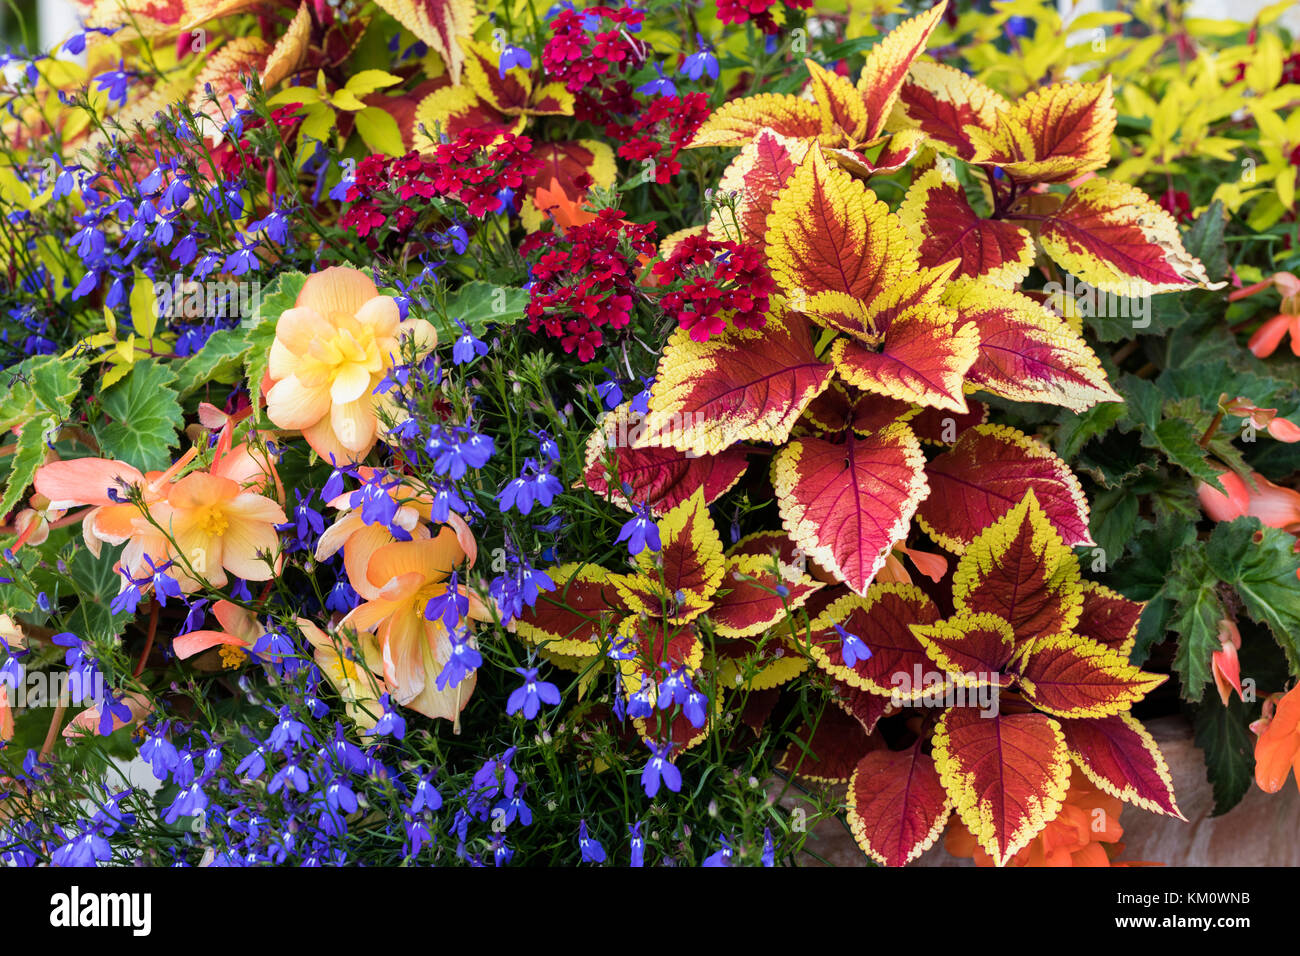 Primer plano de una muestra muy colorida de flores de verano y follaje plantado en un contenedor, Inglaterra, Reino Unido Foto de stock